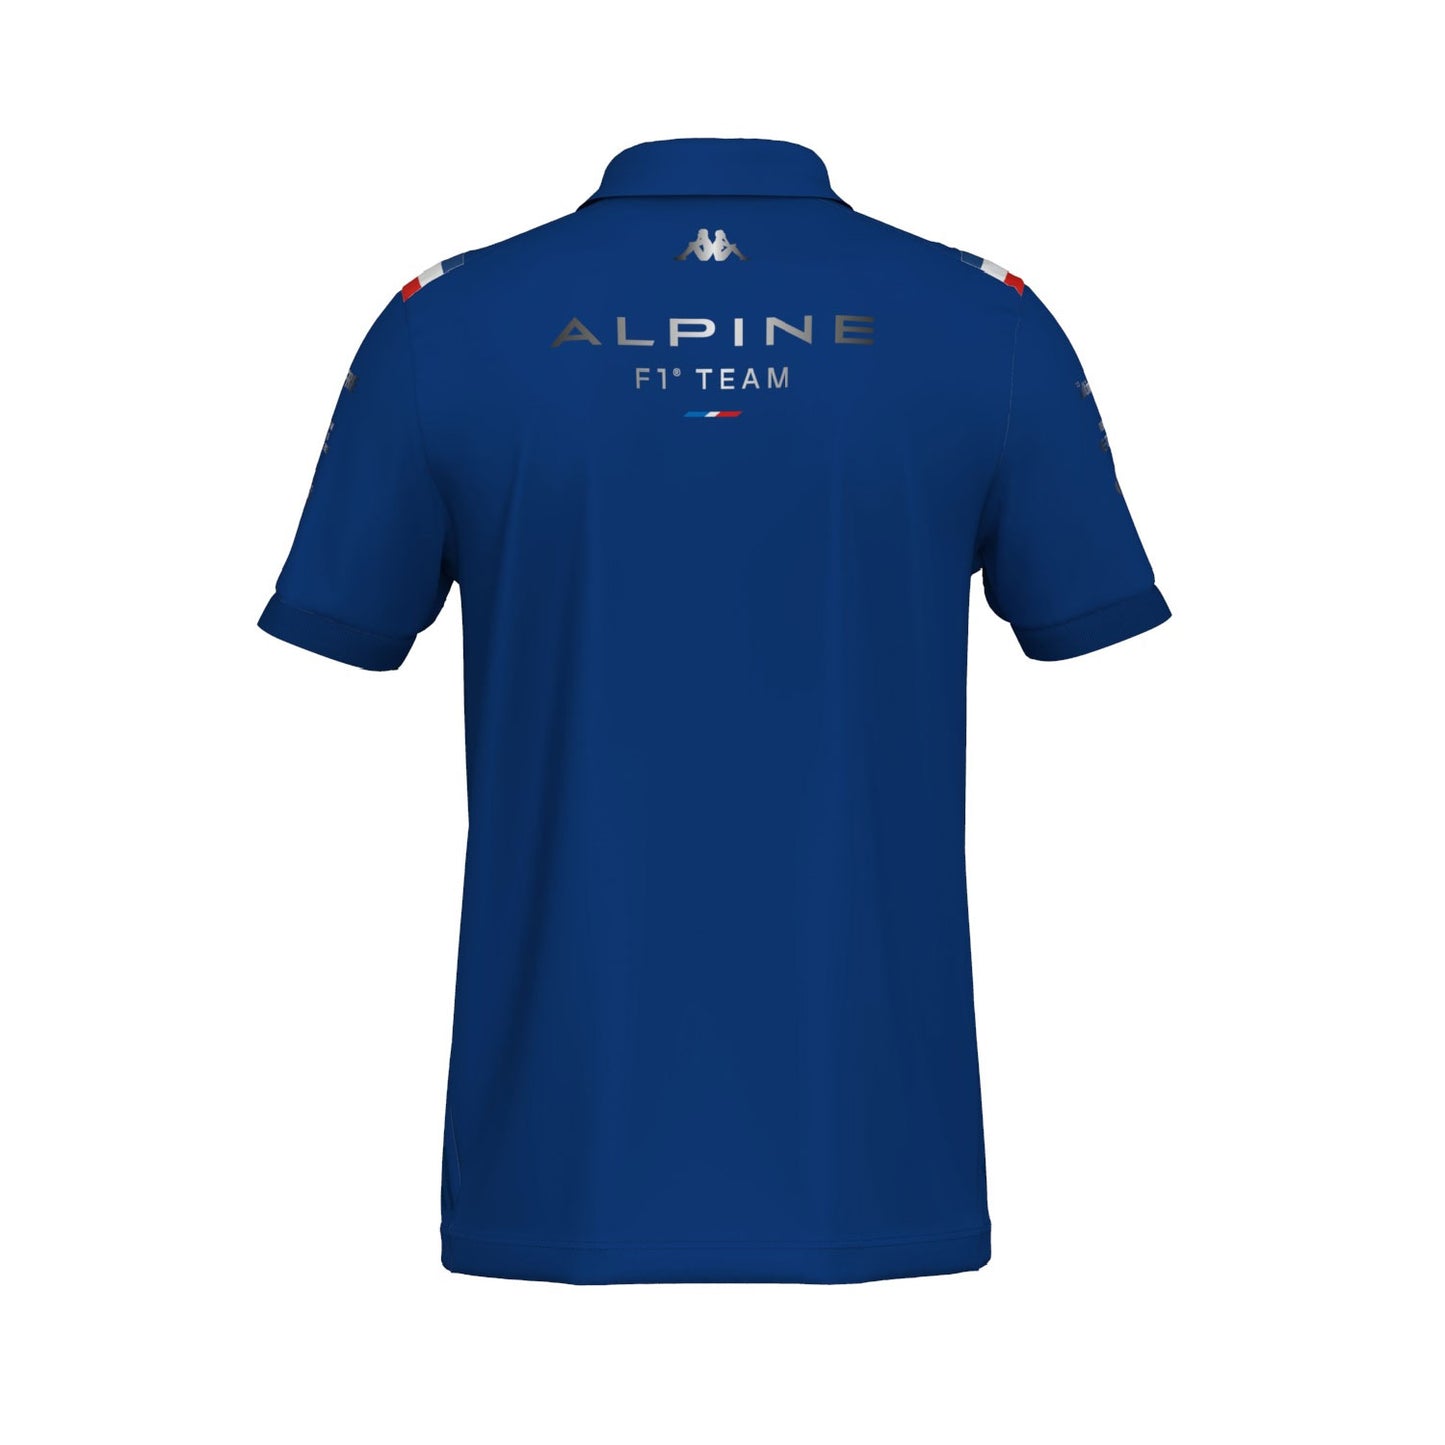 2022 Alpine F1 Team Men's Polo Shirt Blue